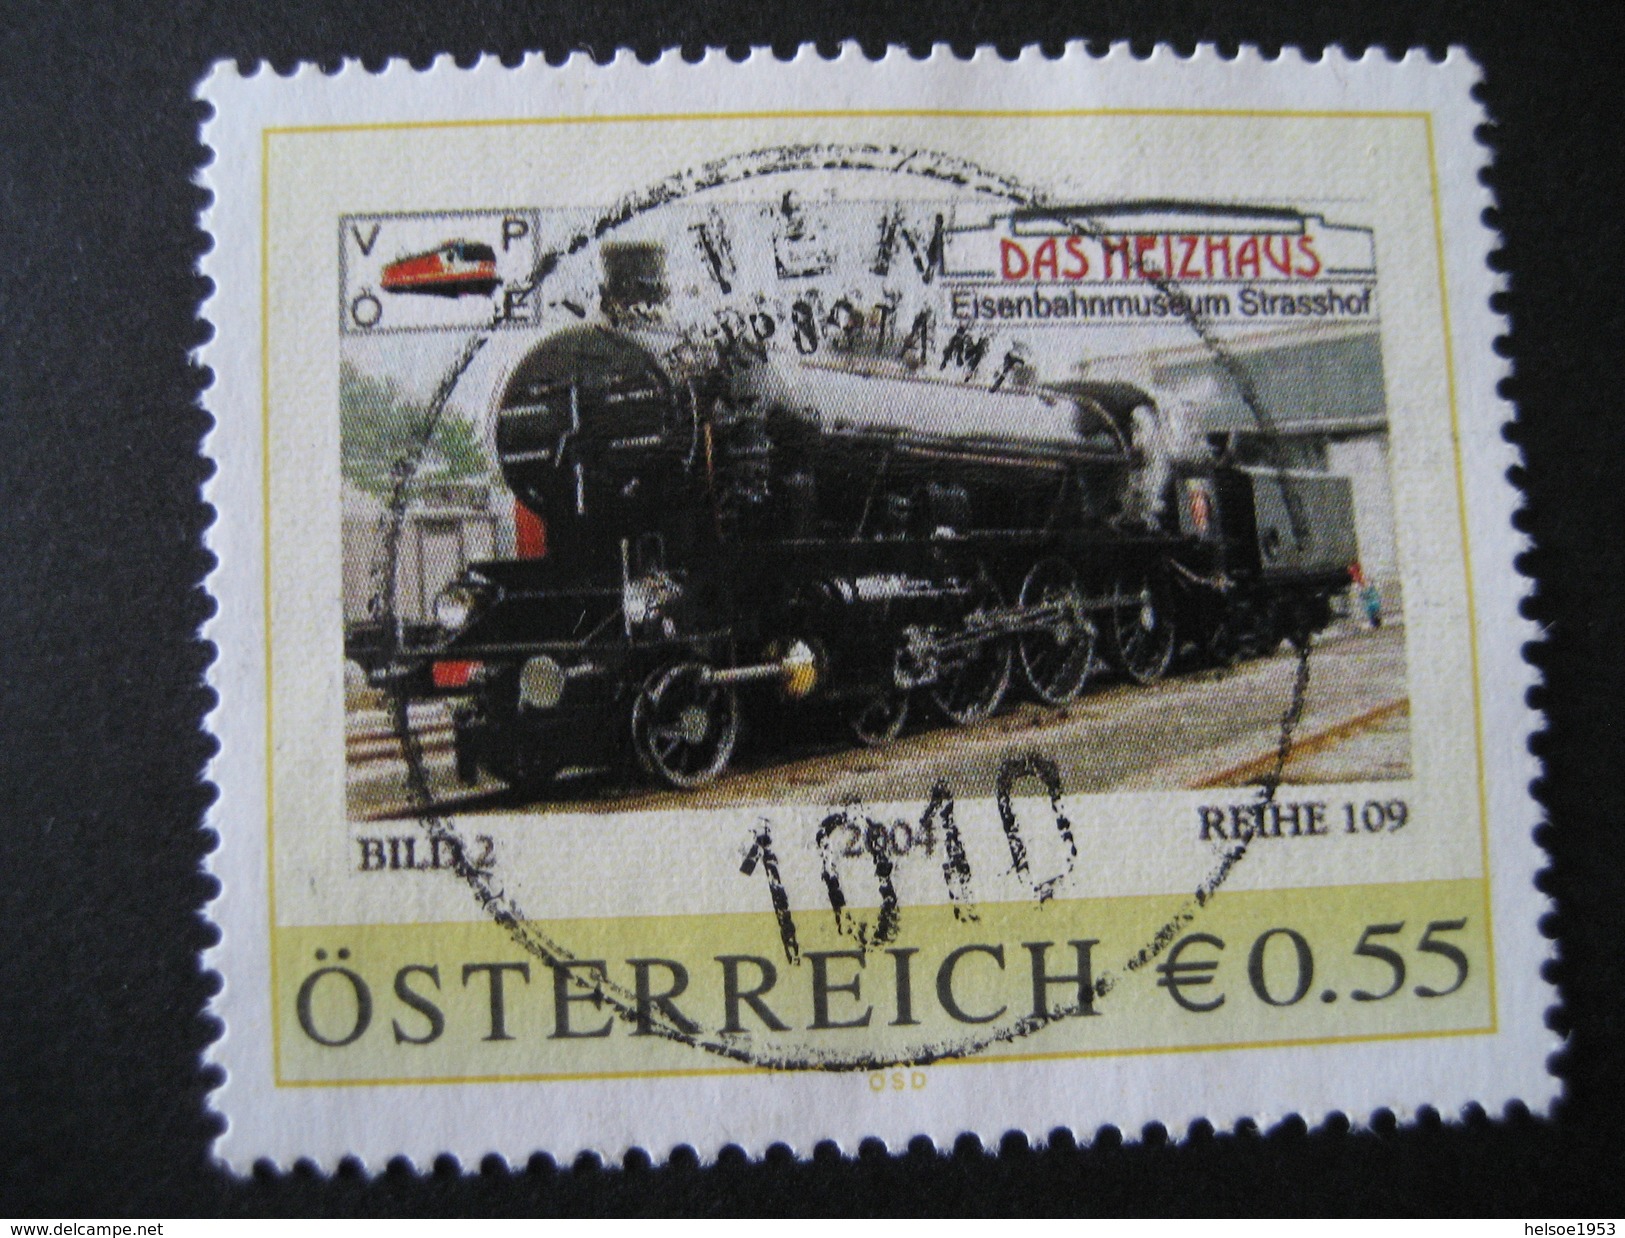 Österreich- Pers.BM 8001040- Strasshof Eisenbahnmuseum Bild 2, Reihe 109 Mit Vollstempel Wien - Francobolli Personalizzati